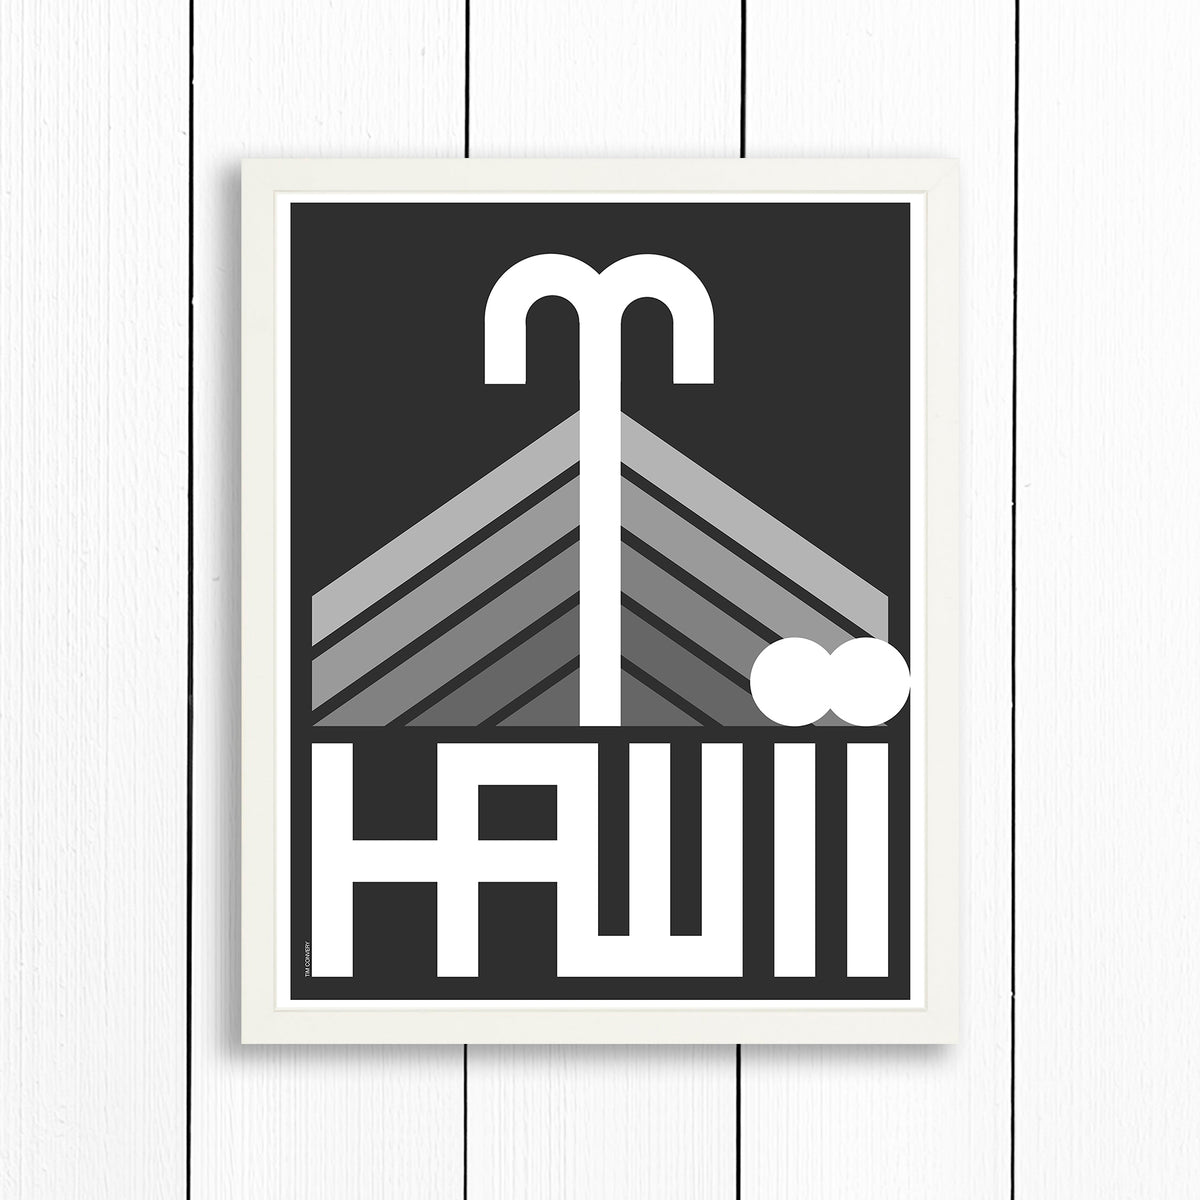 HAWAII / PRINT